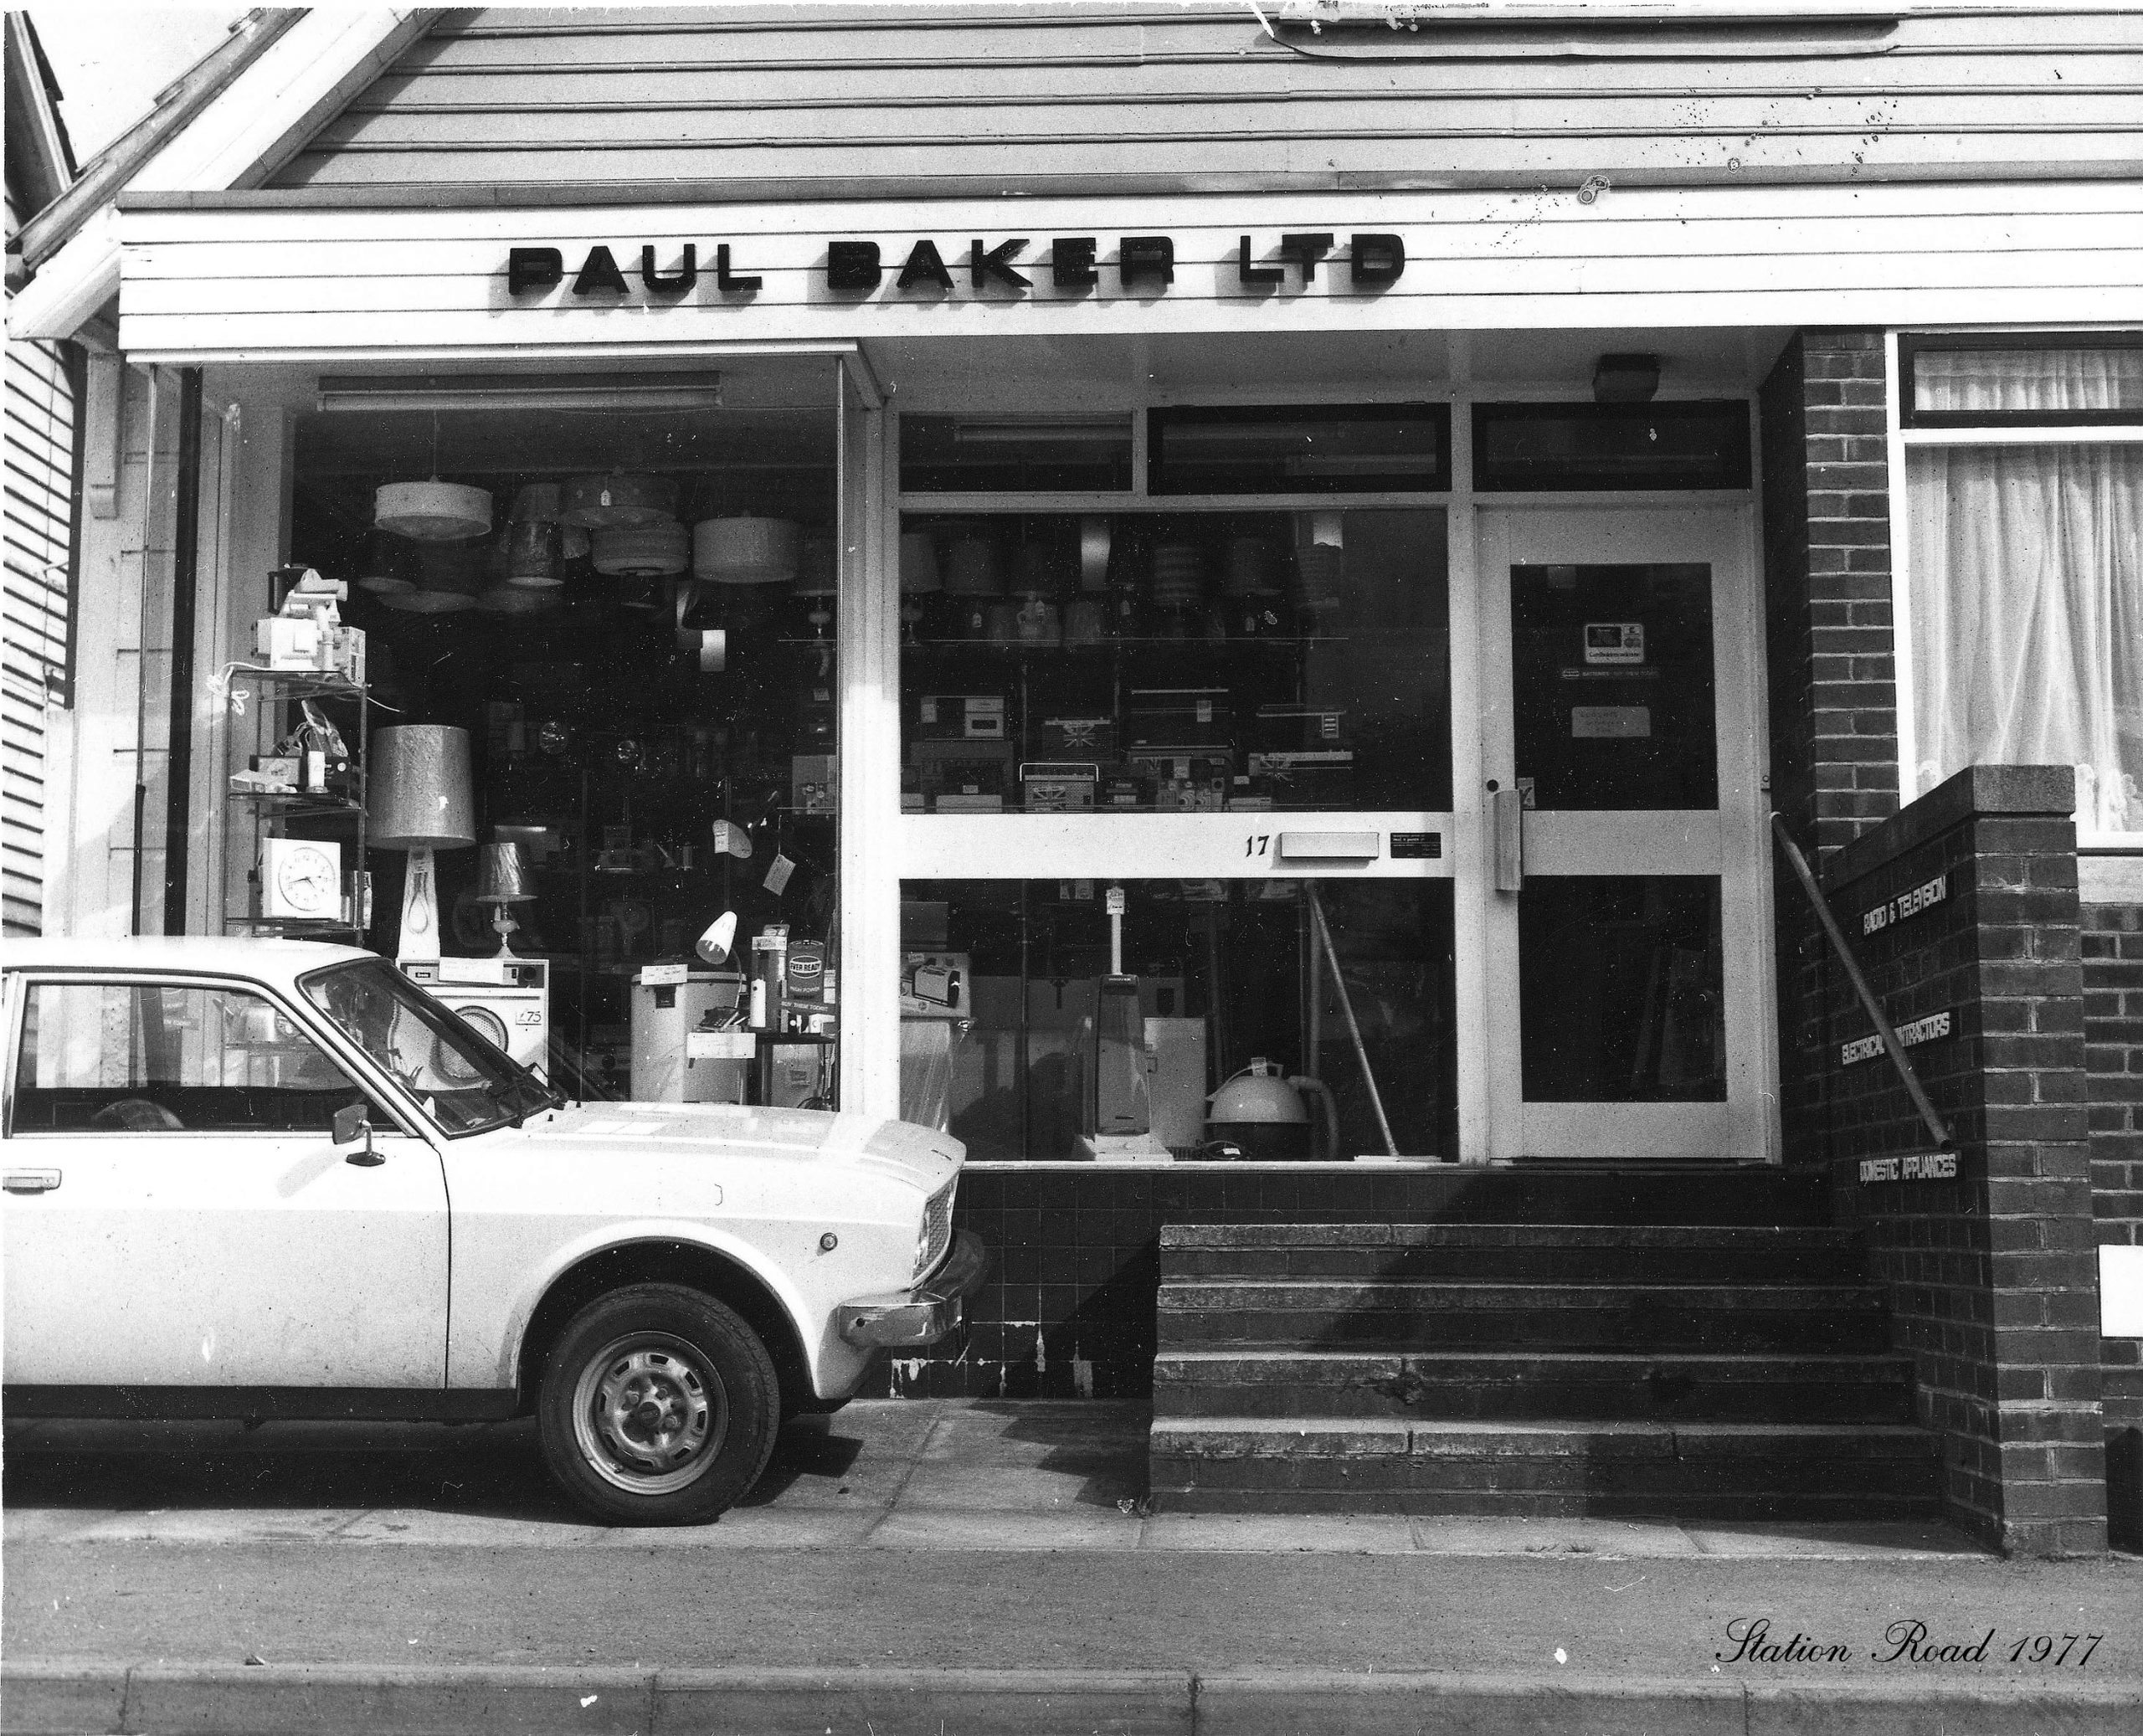 Paul Baker, Hardware, 1977, Station Rd